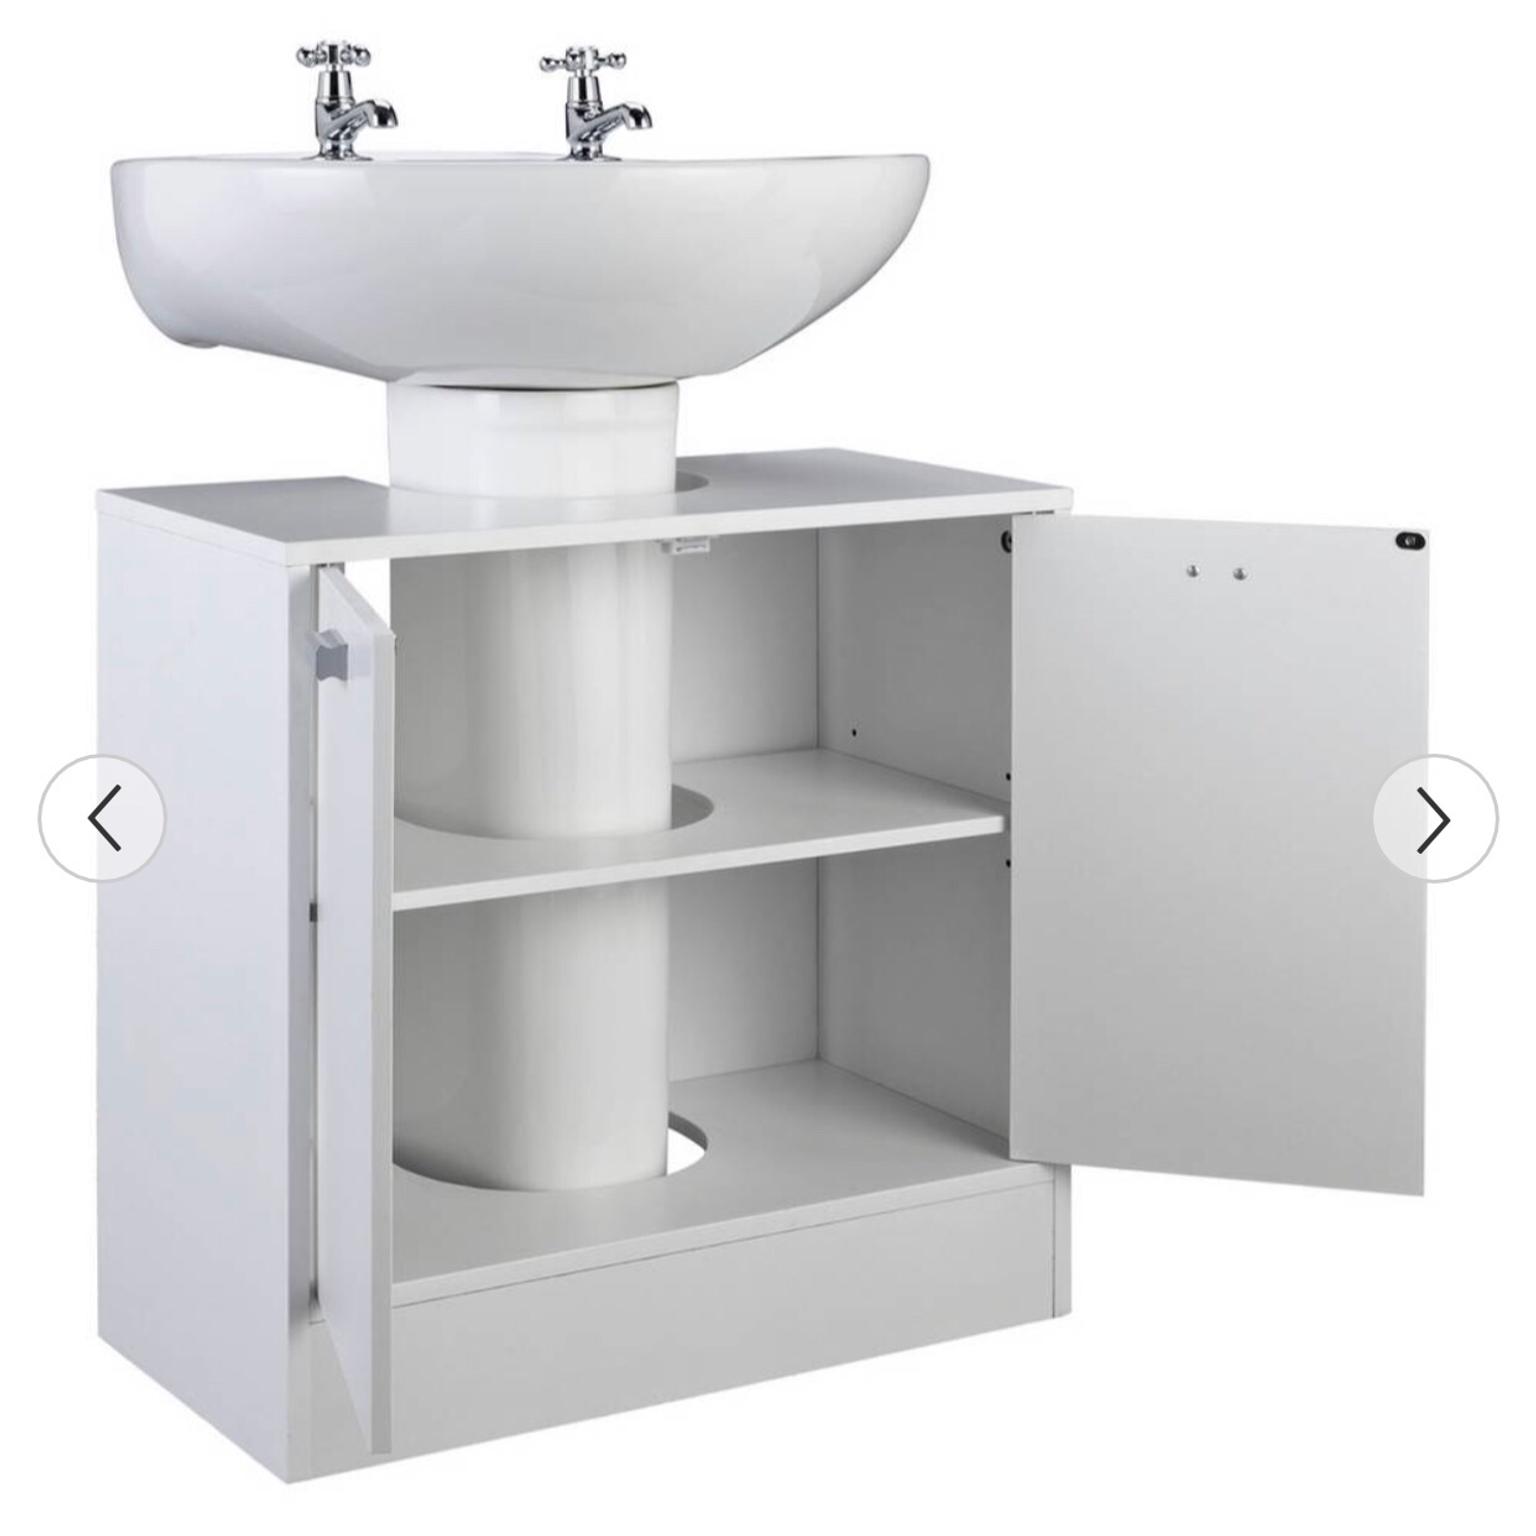 The Pedestal Sink Storage Cabinet Hammacher Schlemmer